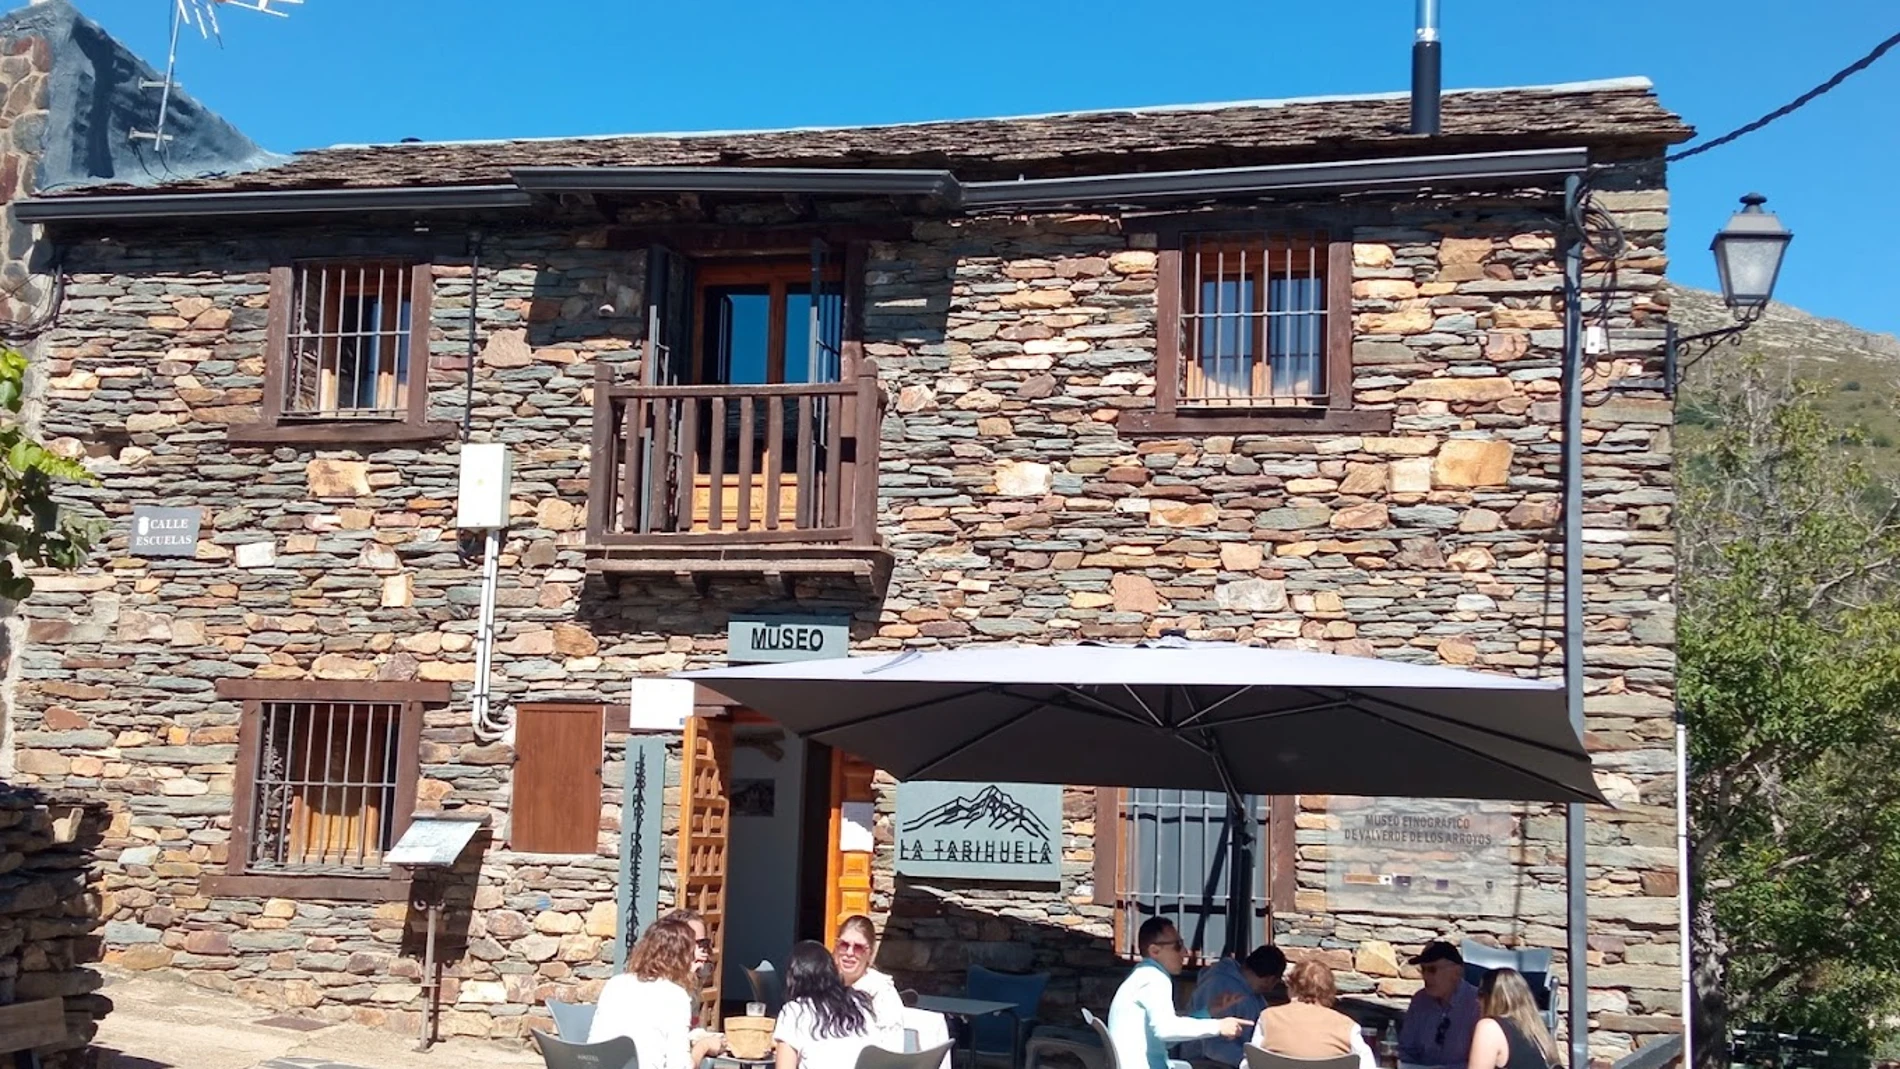 Restaurante "La Tarihuela" en Valverde de los Arroyos (Guadalajara)